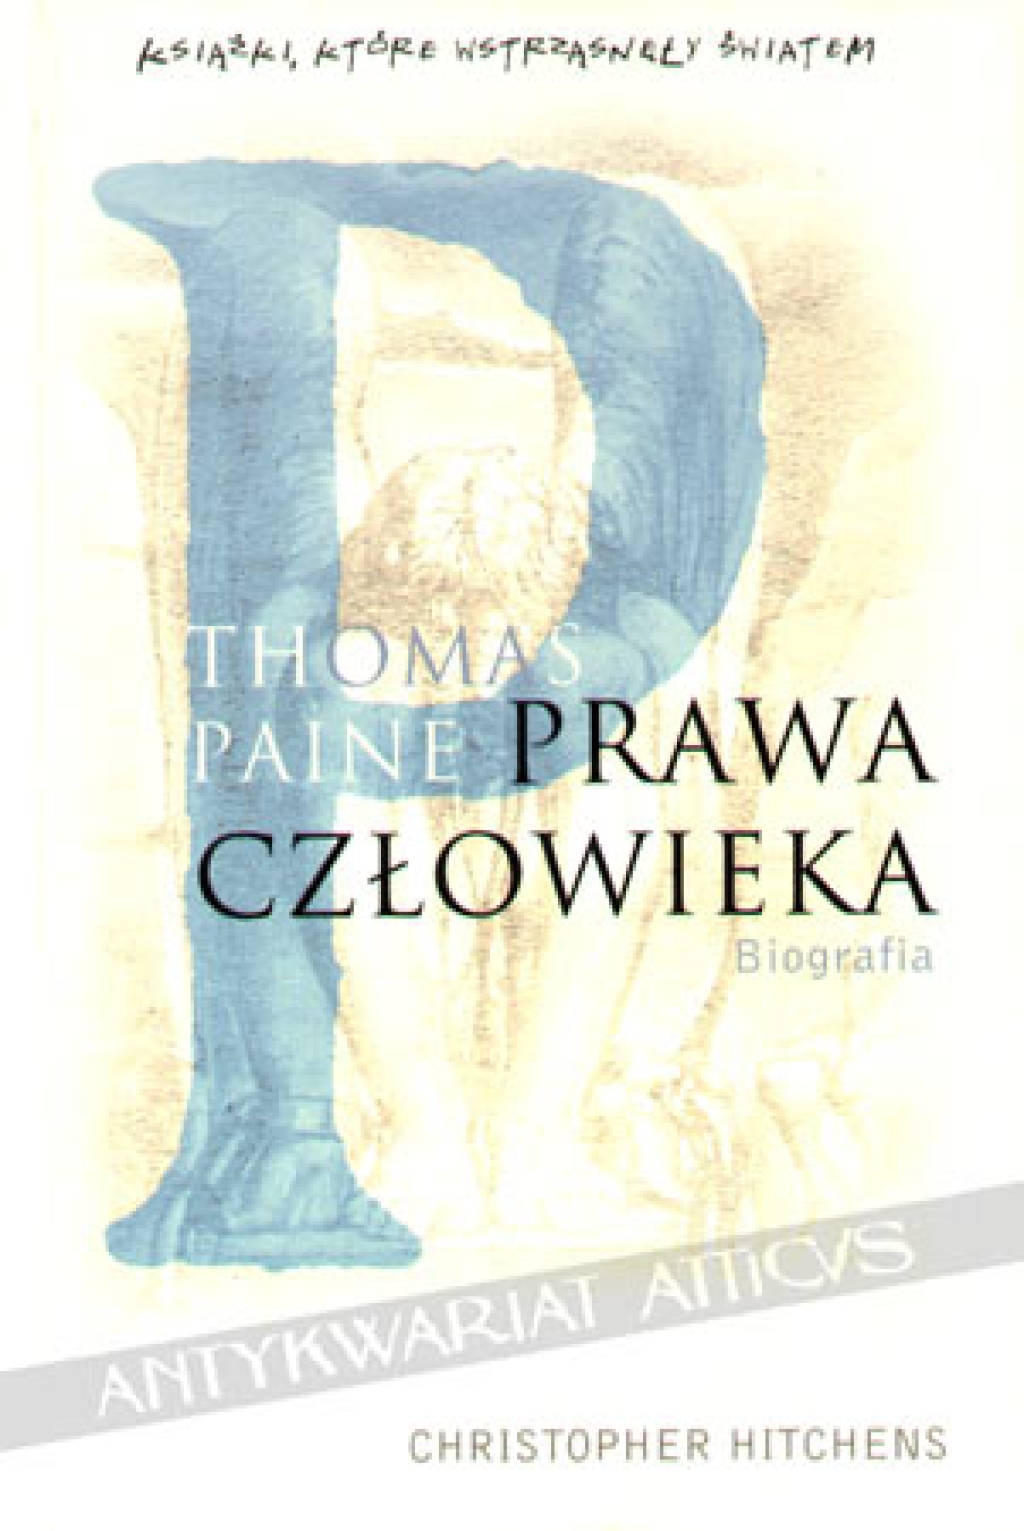 Thomas Paine. Prawa człowieka. Biografia